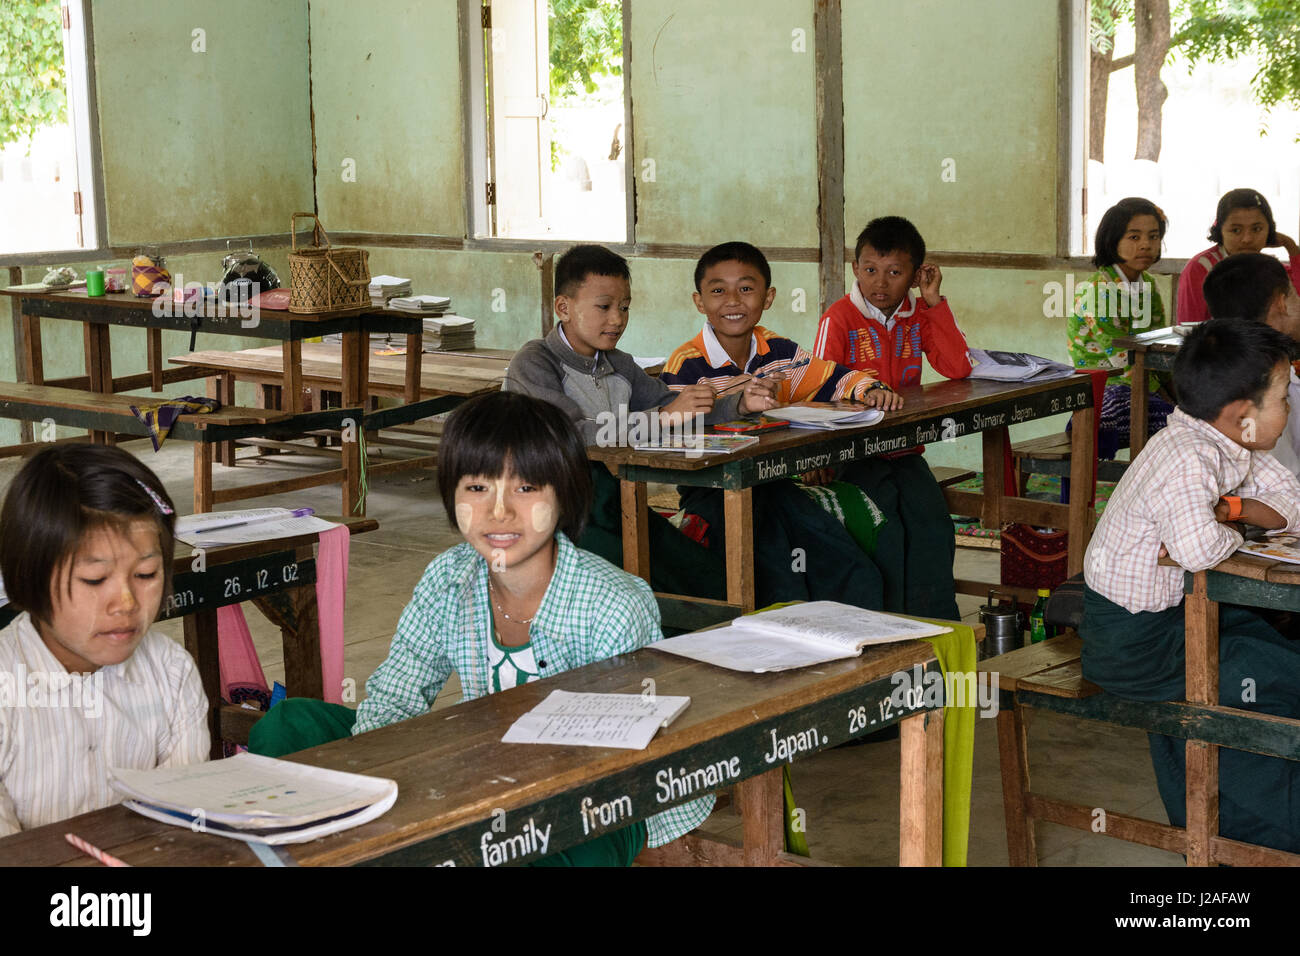 Myanmar (Birmanie), Région de Mandalay, Taungtha, Mandalay, Ba Taung Taung, Province de l'école primaire de Ba Banque D'Images